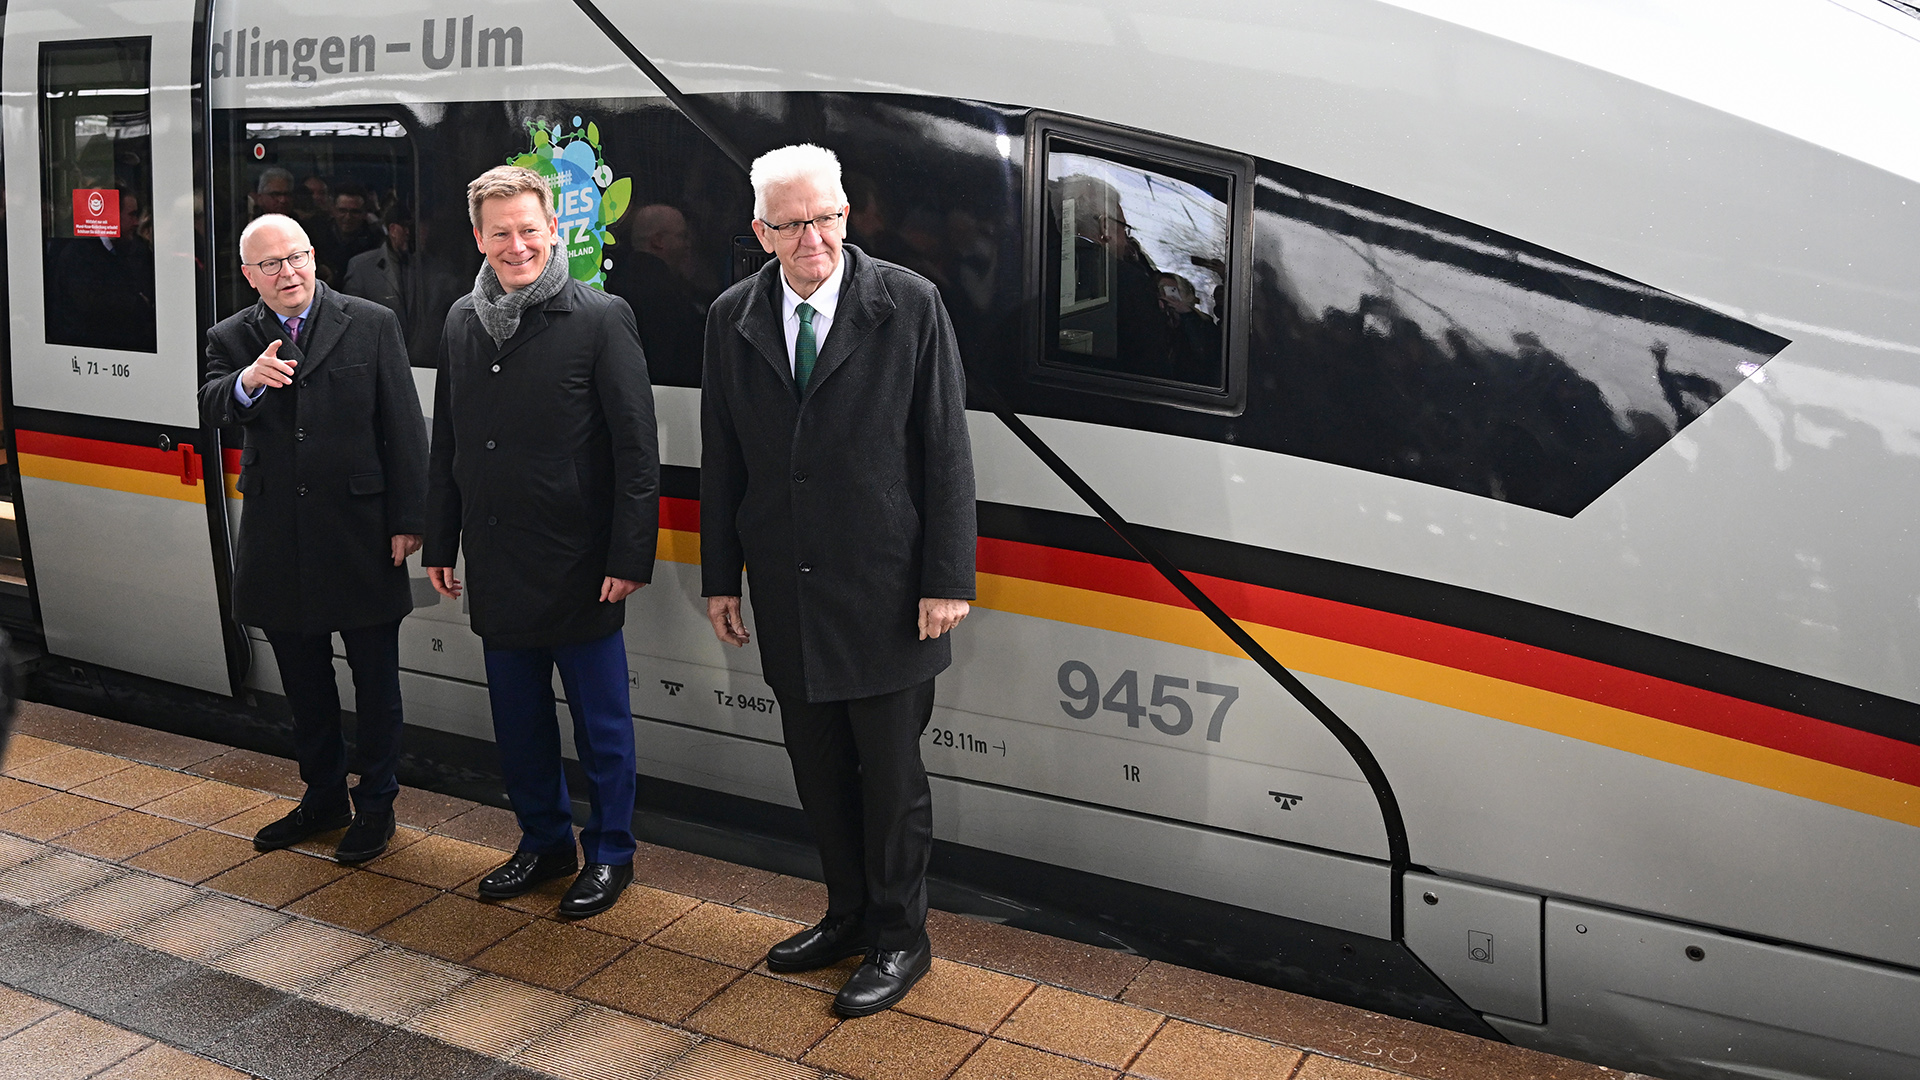 Michael Theurer, Richard Lutz und Winfried Kretschmann (von links) vor einem ICE am Ulmer Bahnhof.